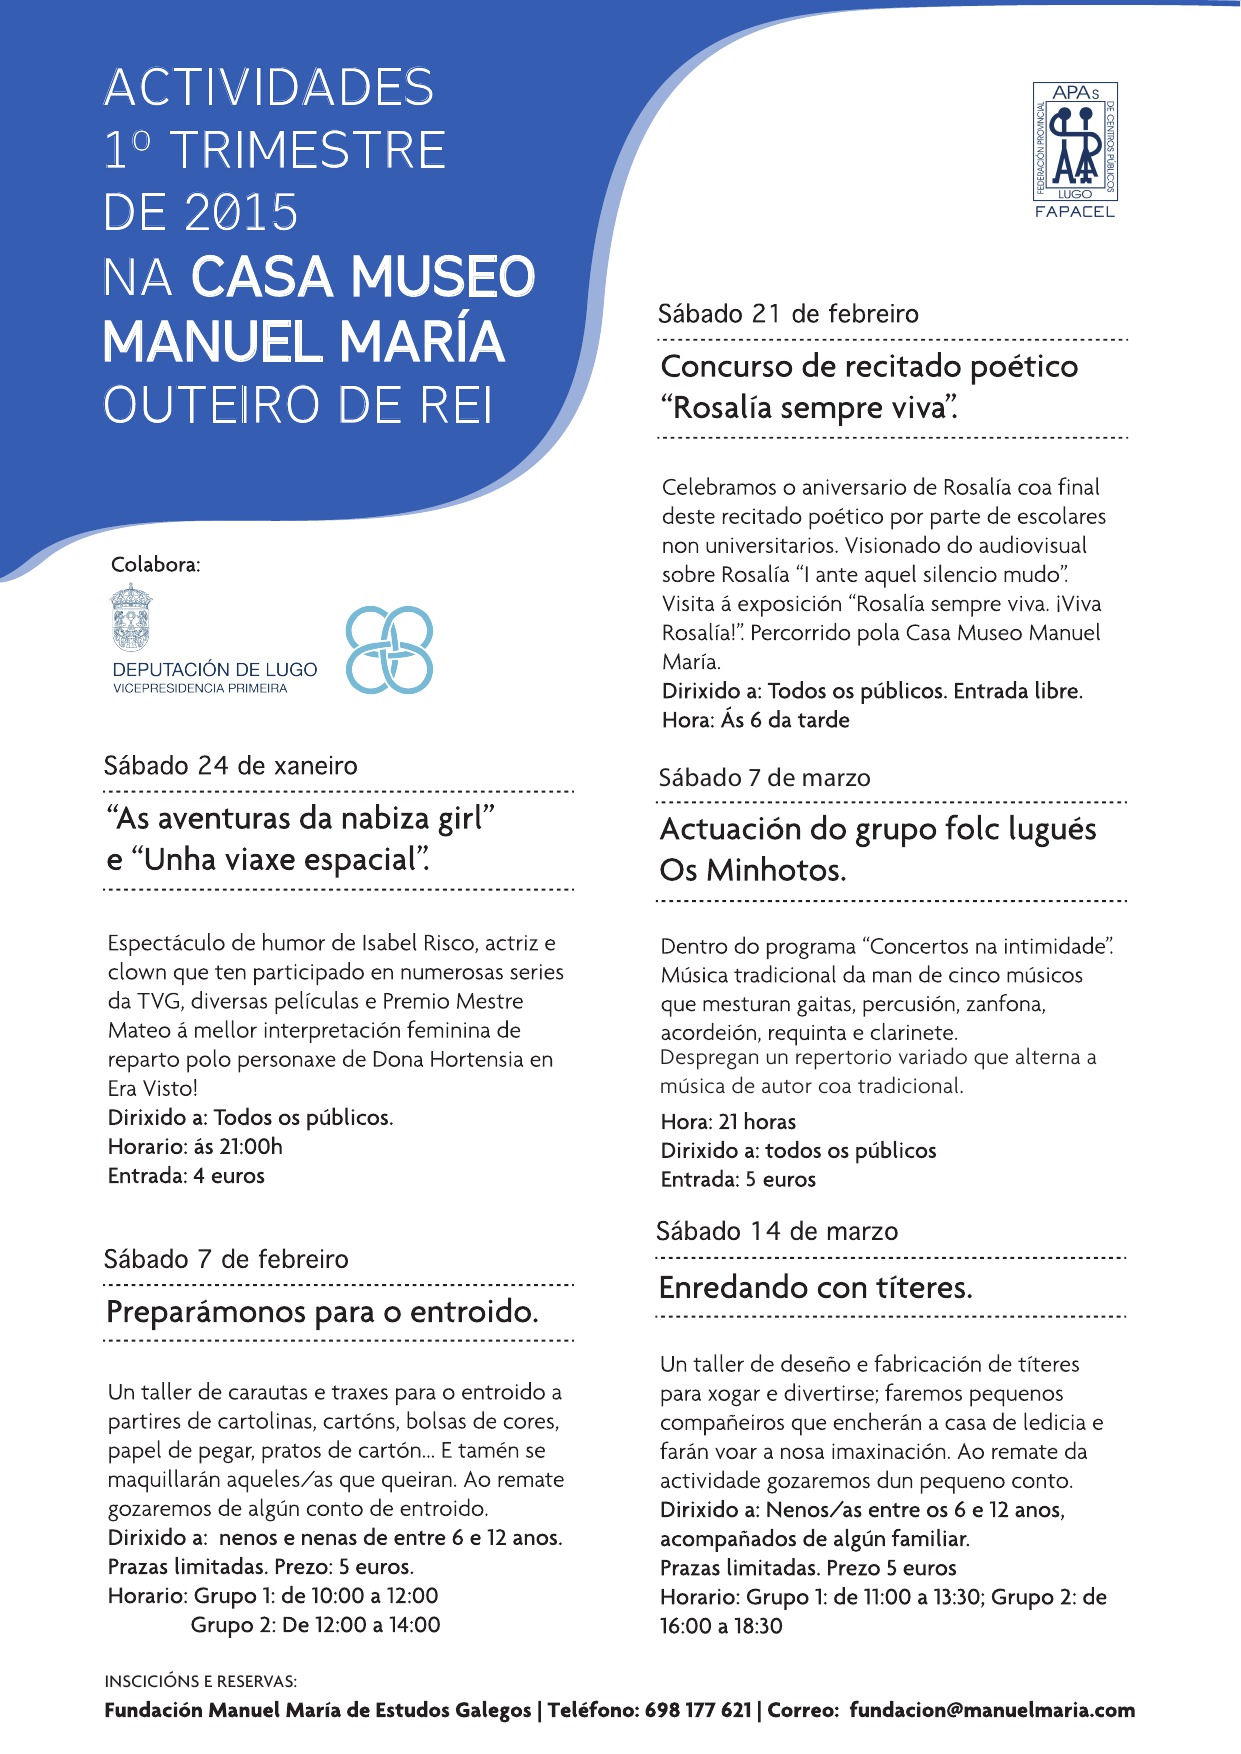 Programación trimestral de actividades na Casa-Museo Manuel María 